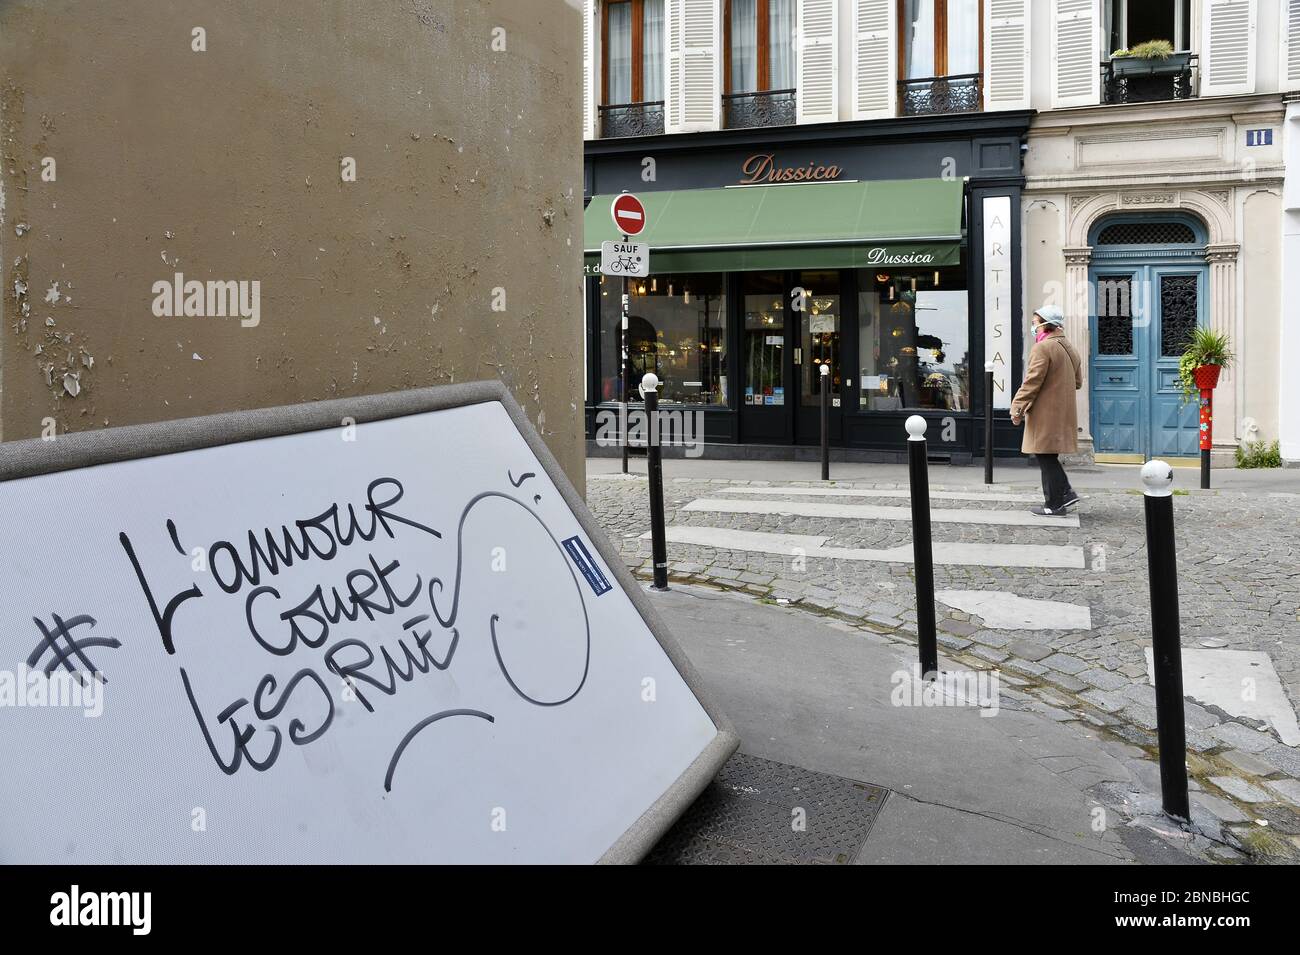 L'Amour court les Rues - Deconfinement in Paris - France Stock Photo